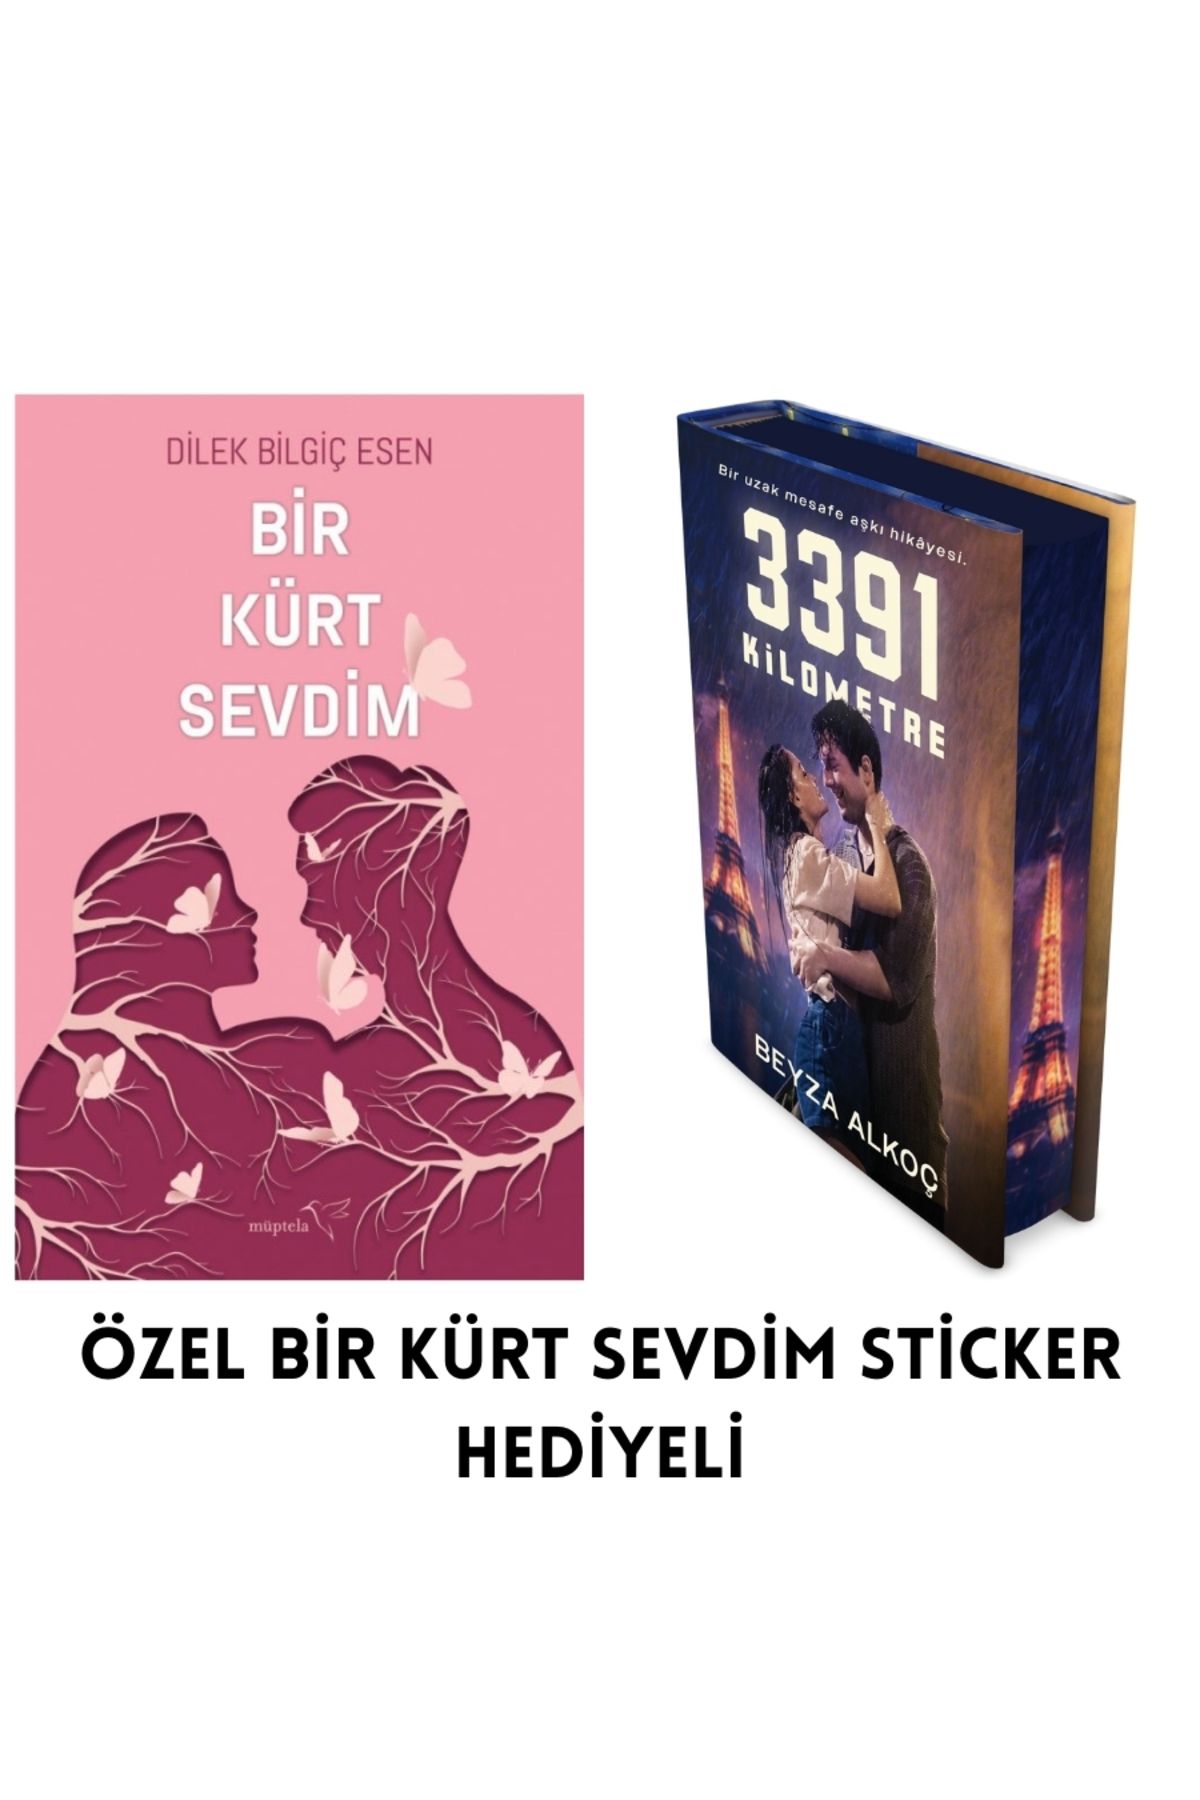 Müptela Yayınları Bir Kürt Sevdim+3391 Kilometre - Film Kapağı ( Ciltli )+ Özel Kürt Sevdim Sticker Hediyeli